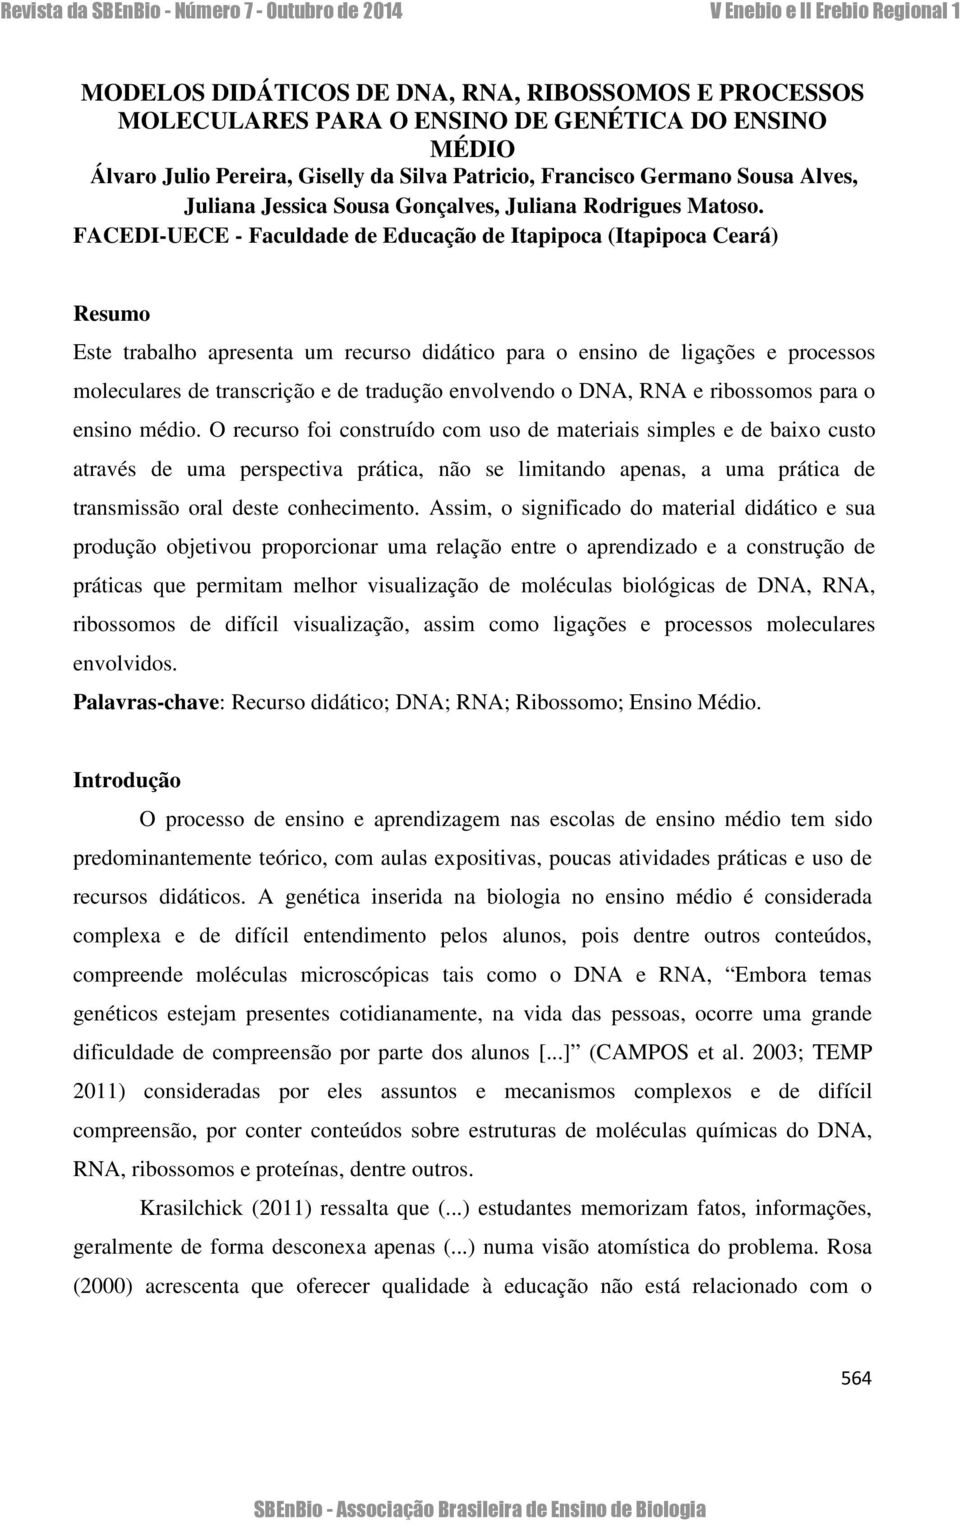 FACEDI-UECE - Faculdade de Educação de Itapipoca (Itapipoca Ceará) Resumo Este trabalho apresenta um recurso didático para o ensino de ligações e processos moleculares de transcrição e de tradução